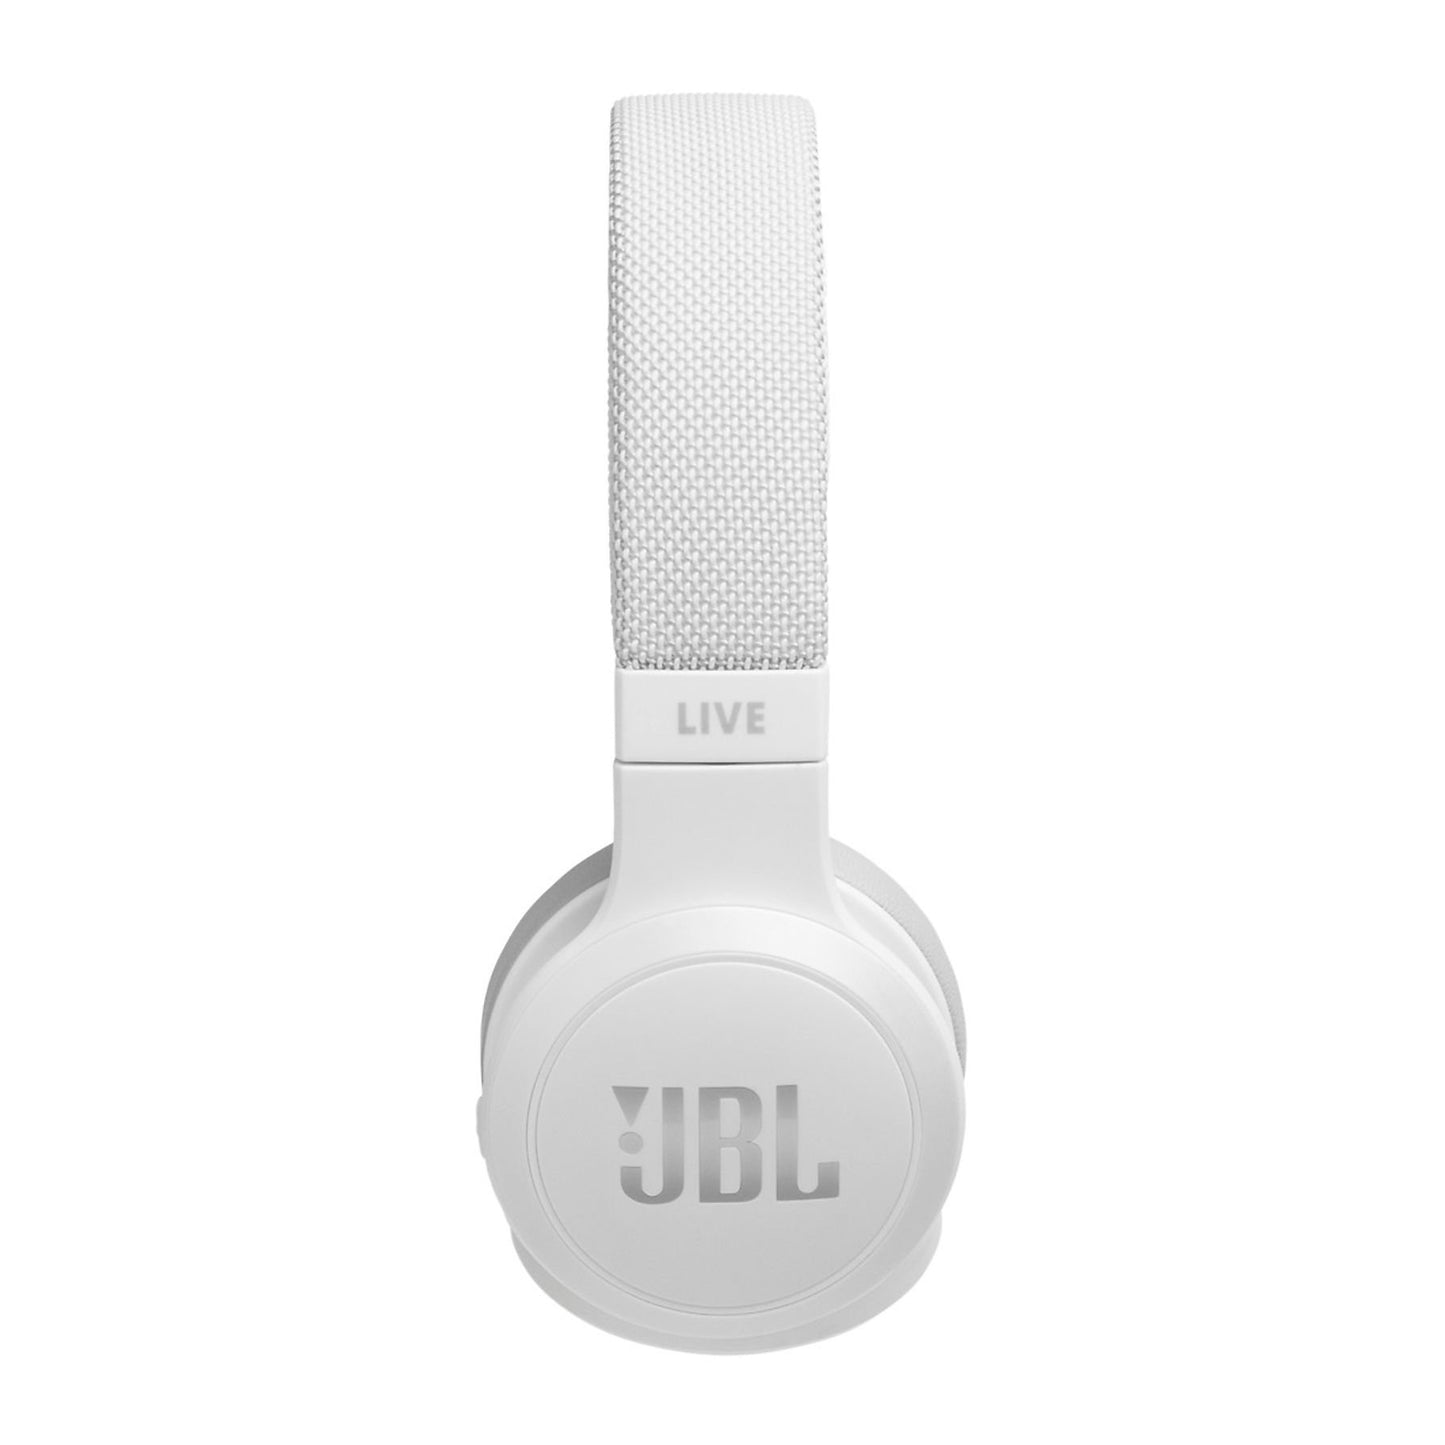 JBL LIVE 400BT, On-ear Kopfhörer Bluetooth weiß